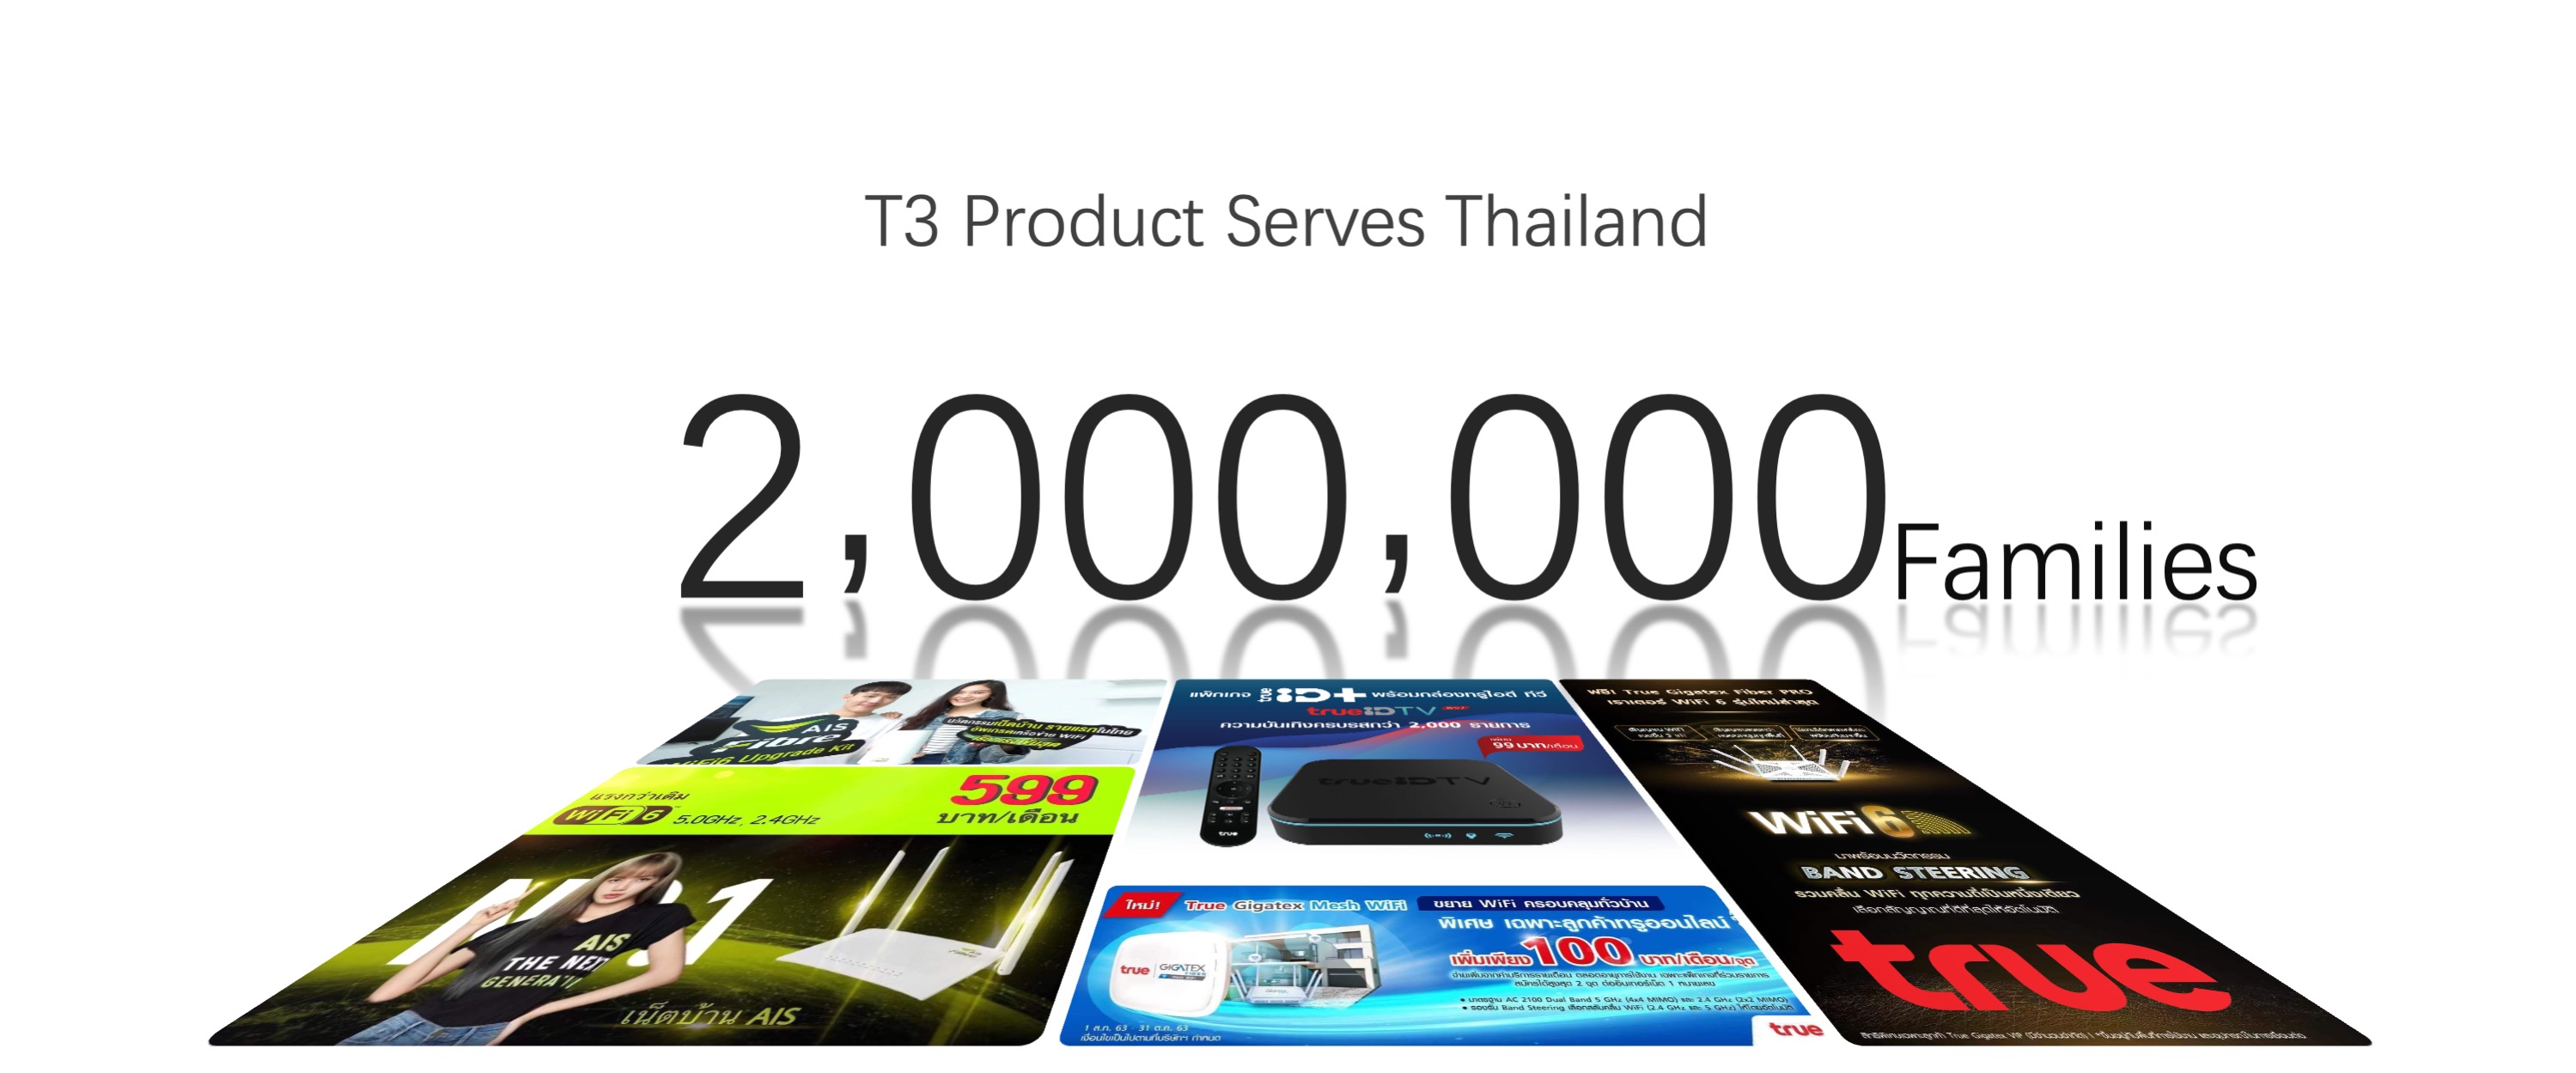 T3 product serves Thailand 2 million families